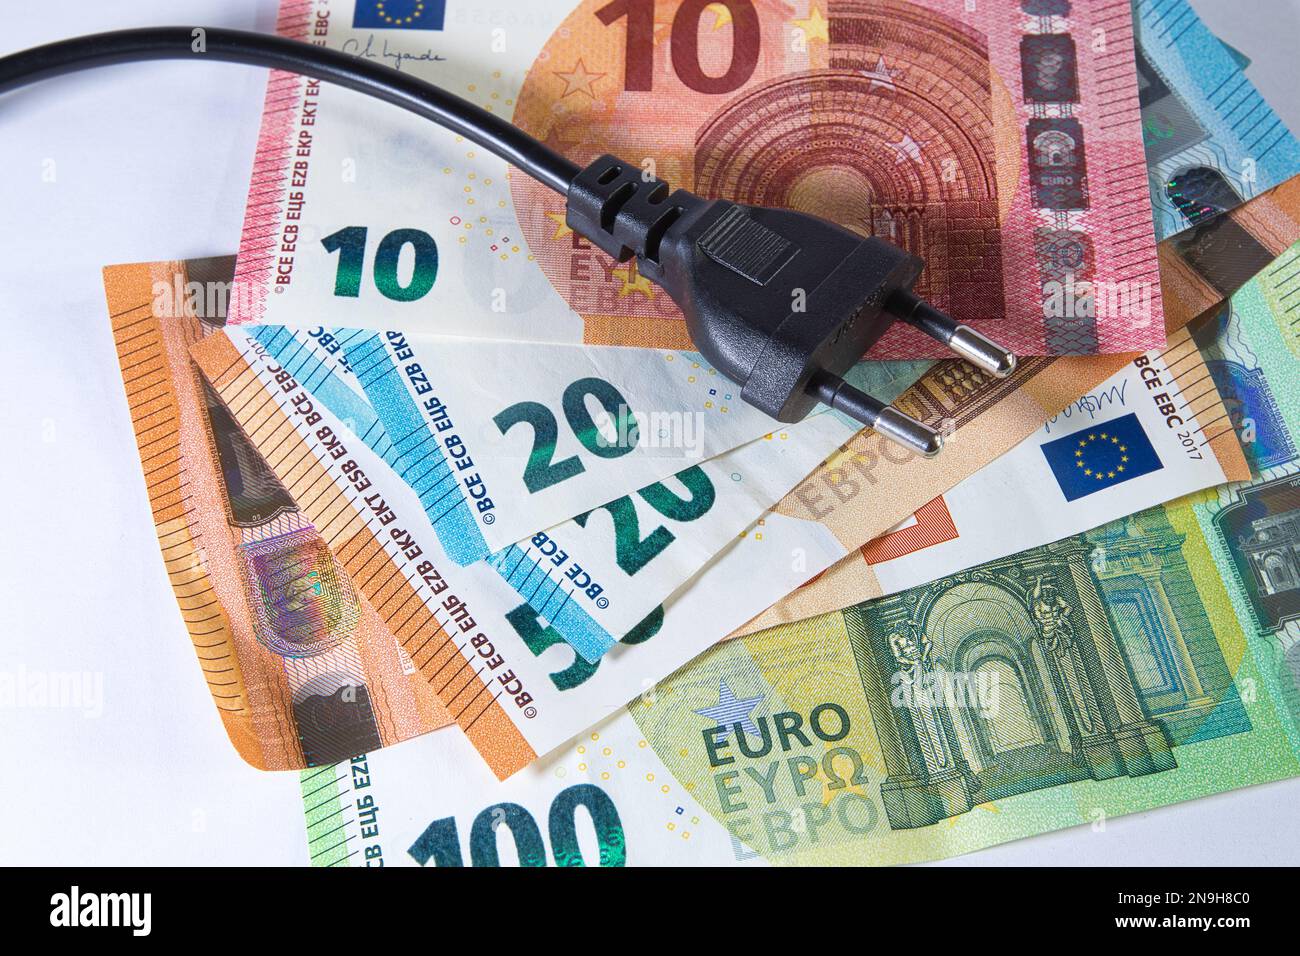 denaro europeo in un mucchio con connettore maschio che illustra l'aumento dei costi energetici Foto Stock